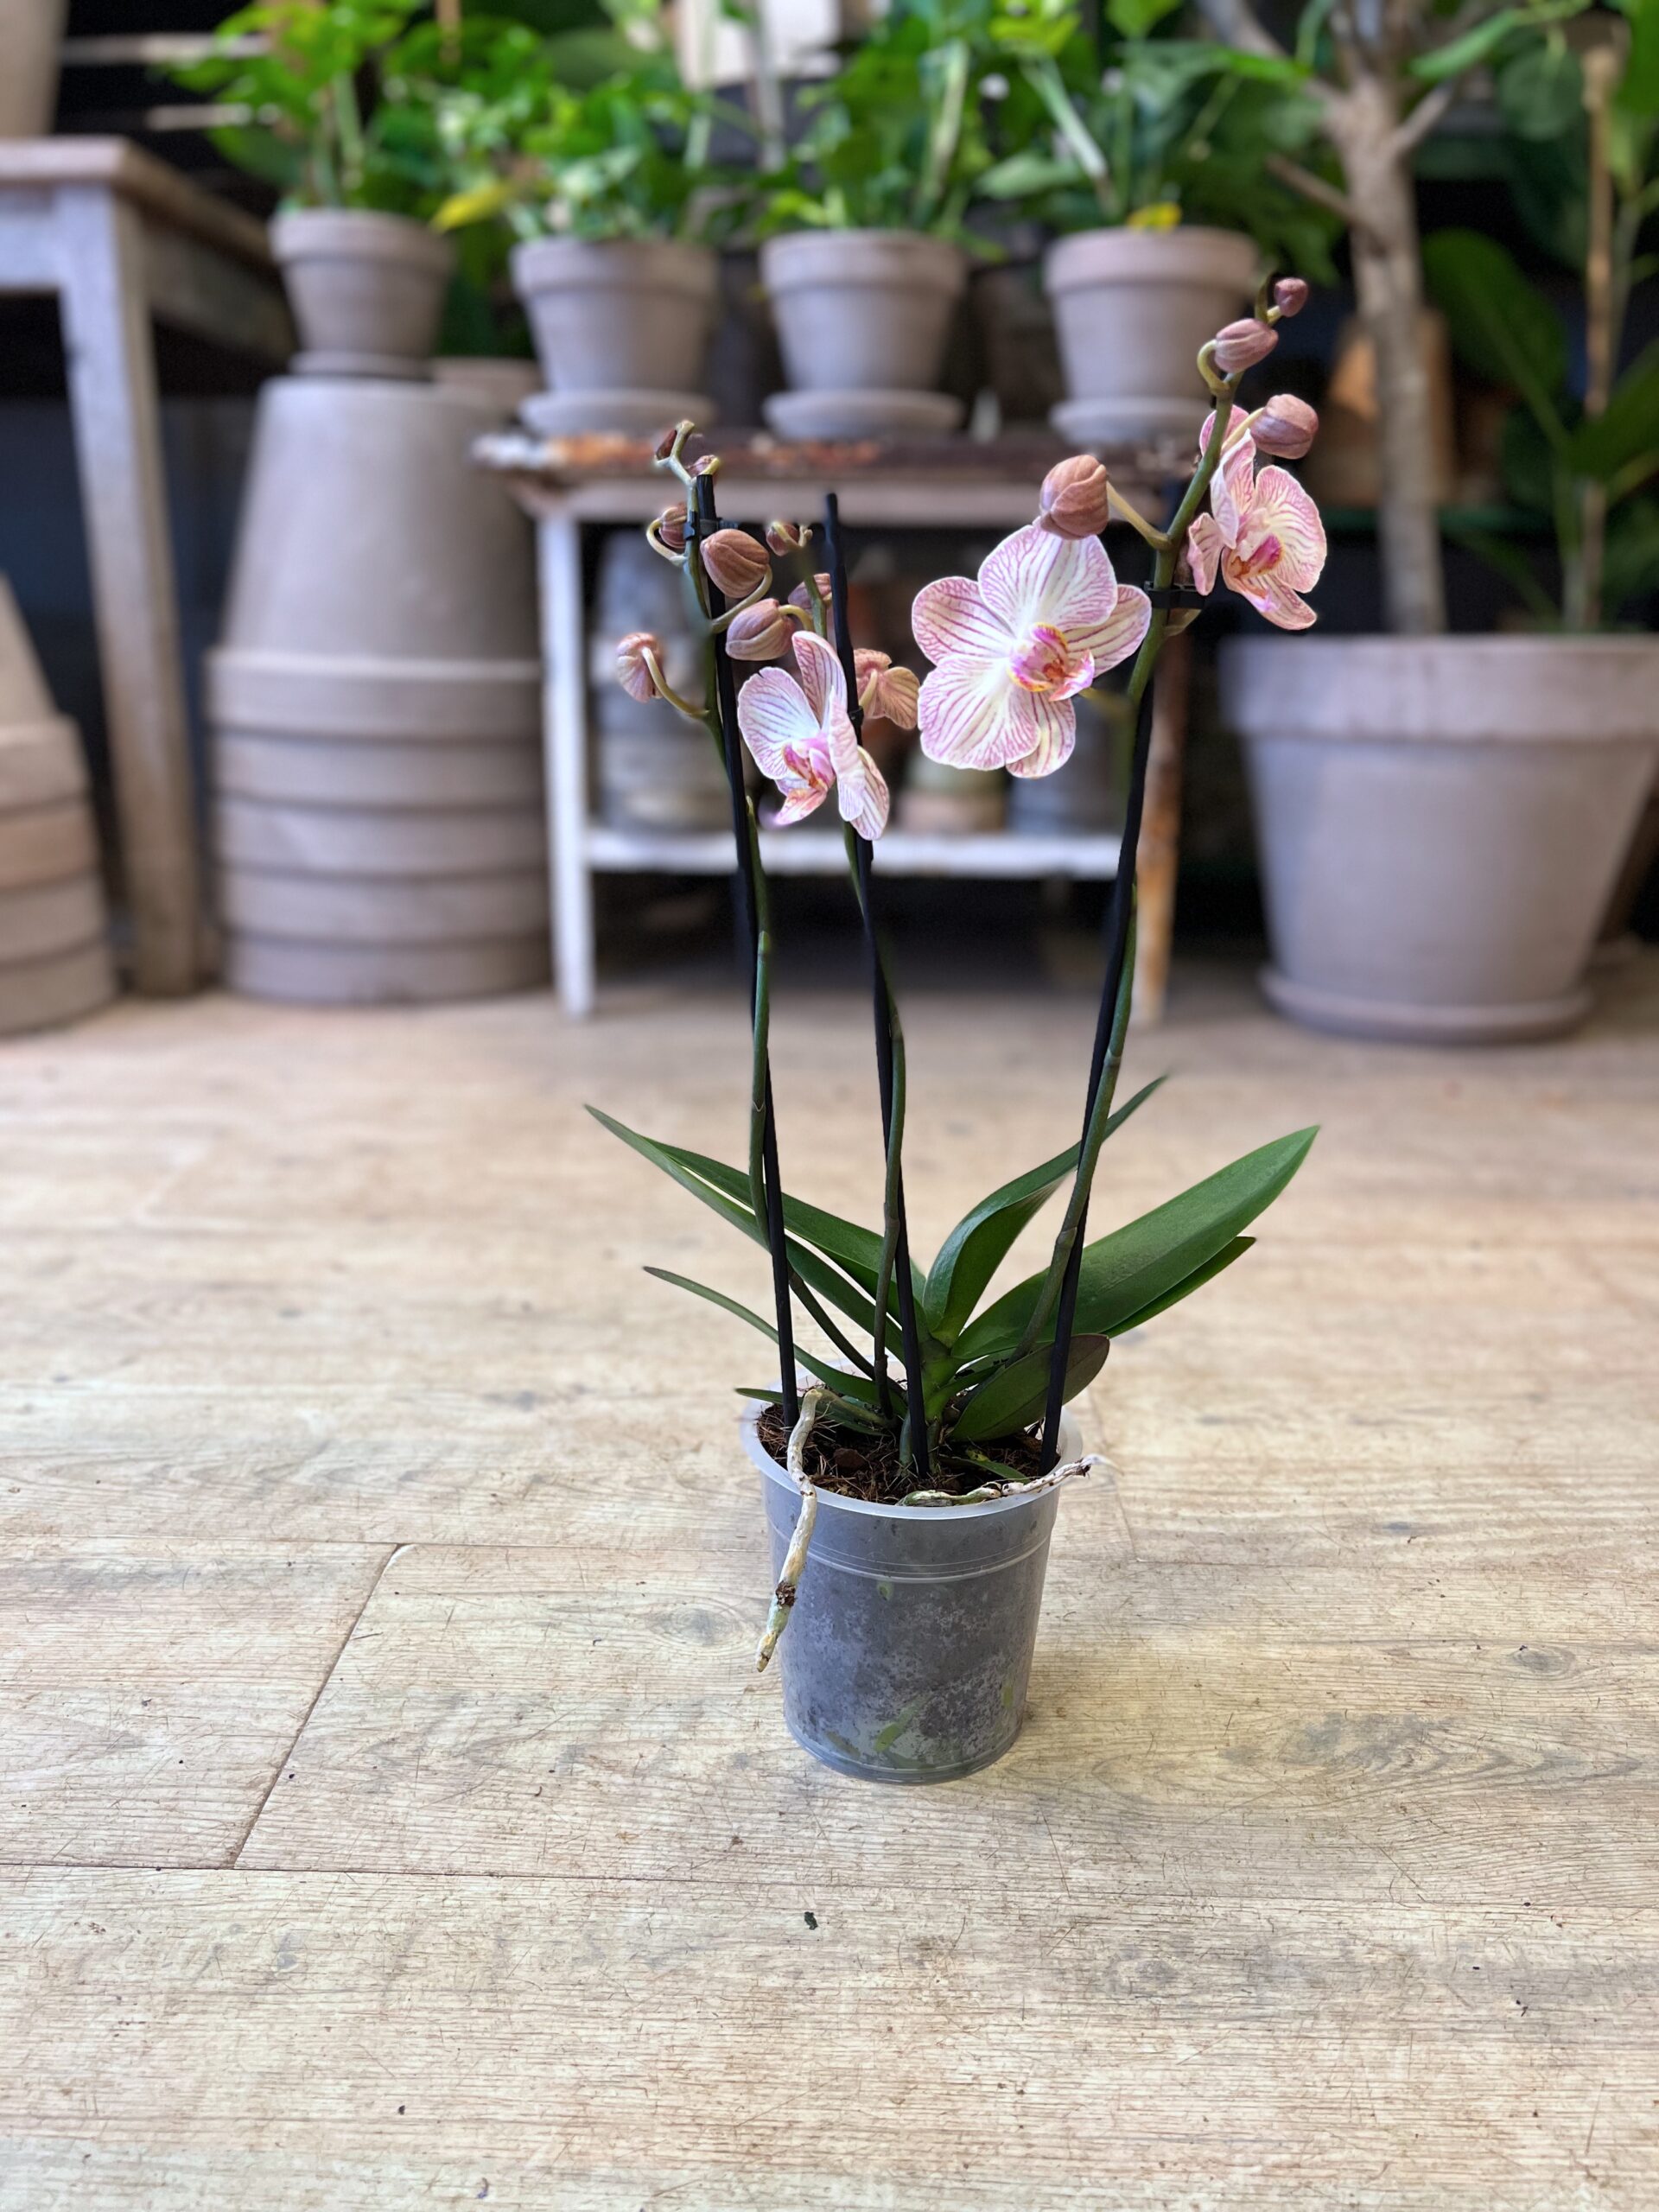 Orkidé 3 grenet uden krukke - Happyflower-dk